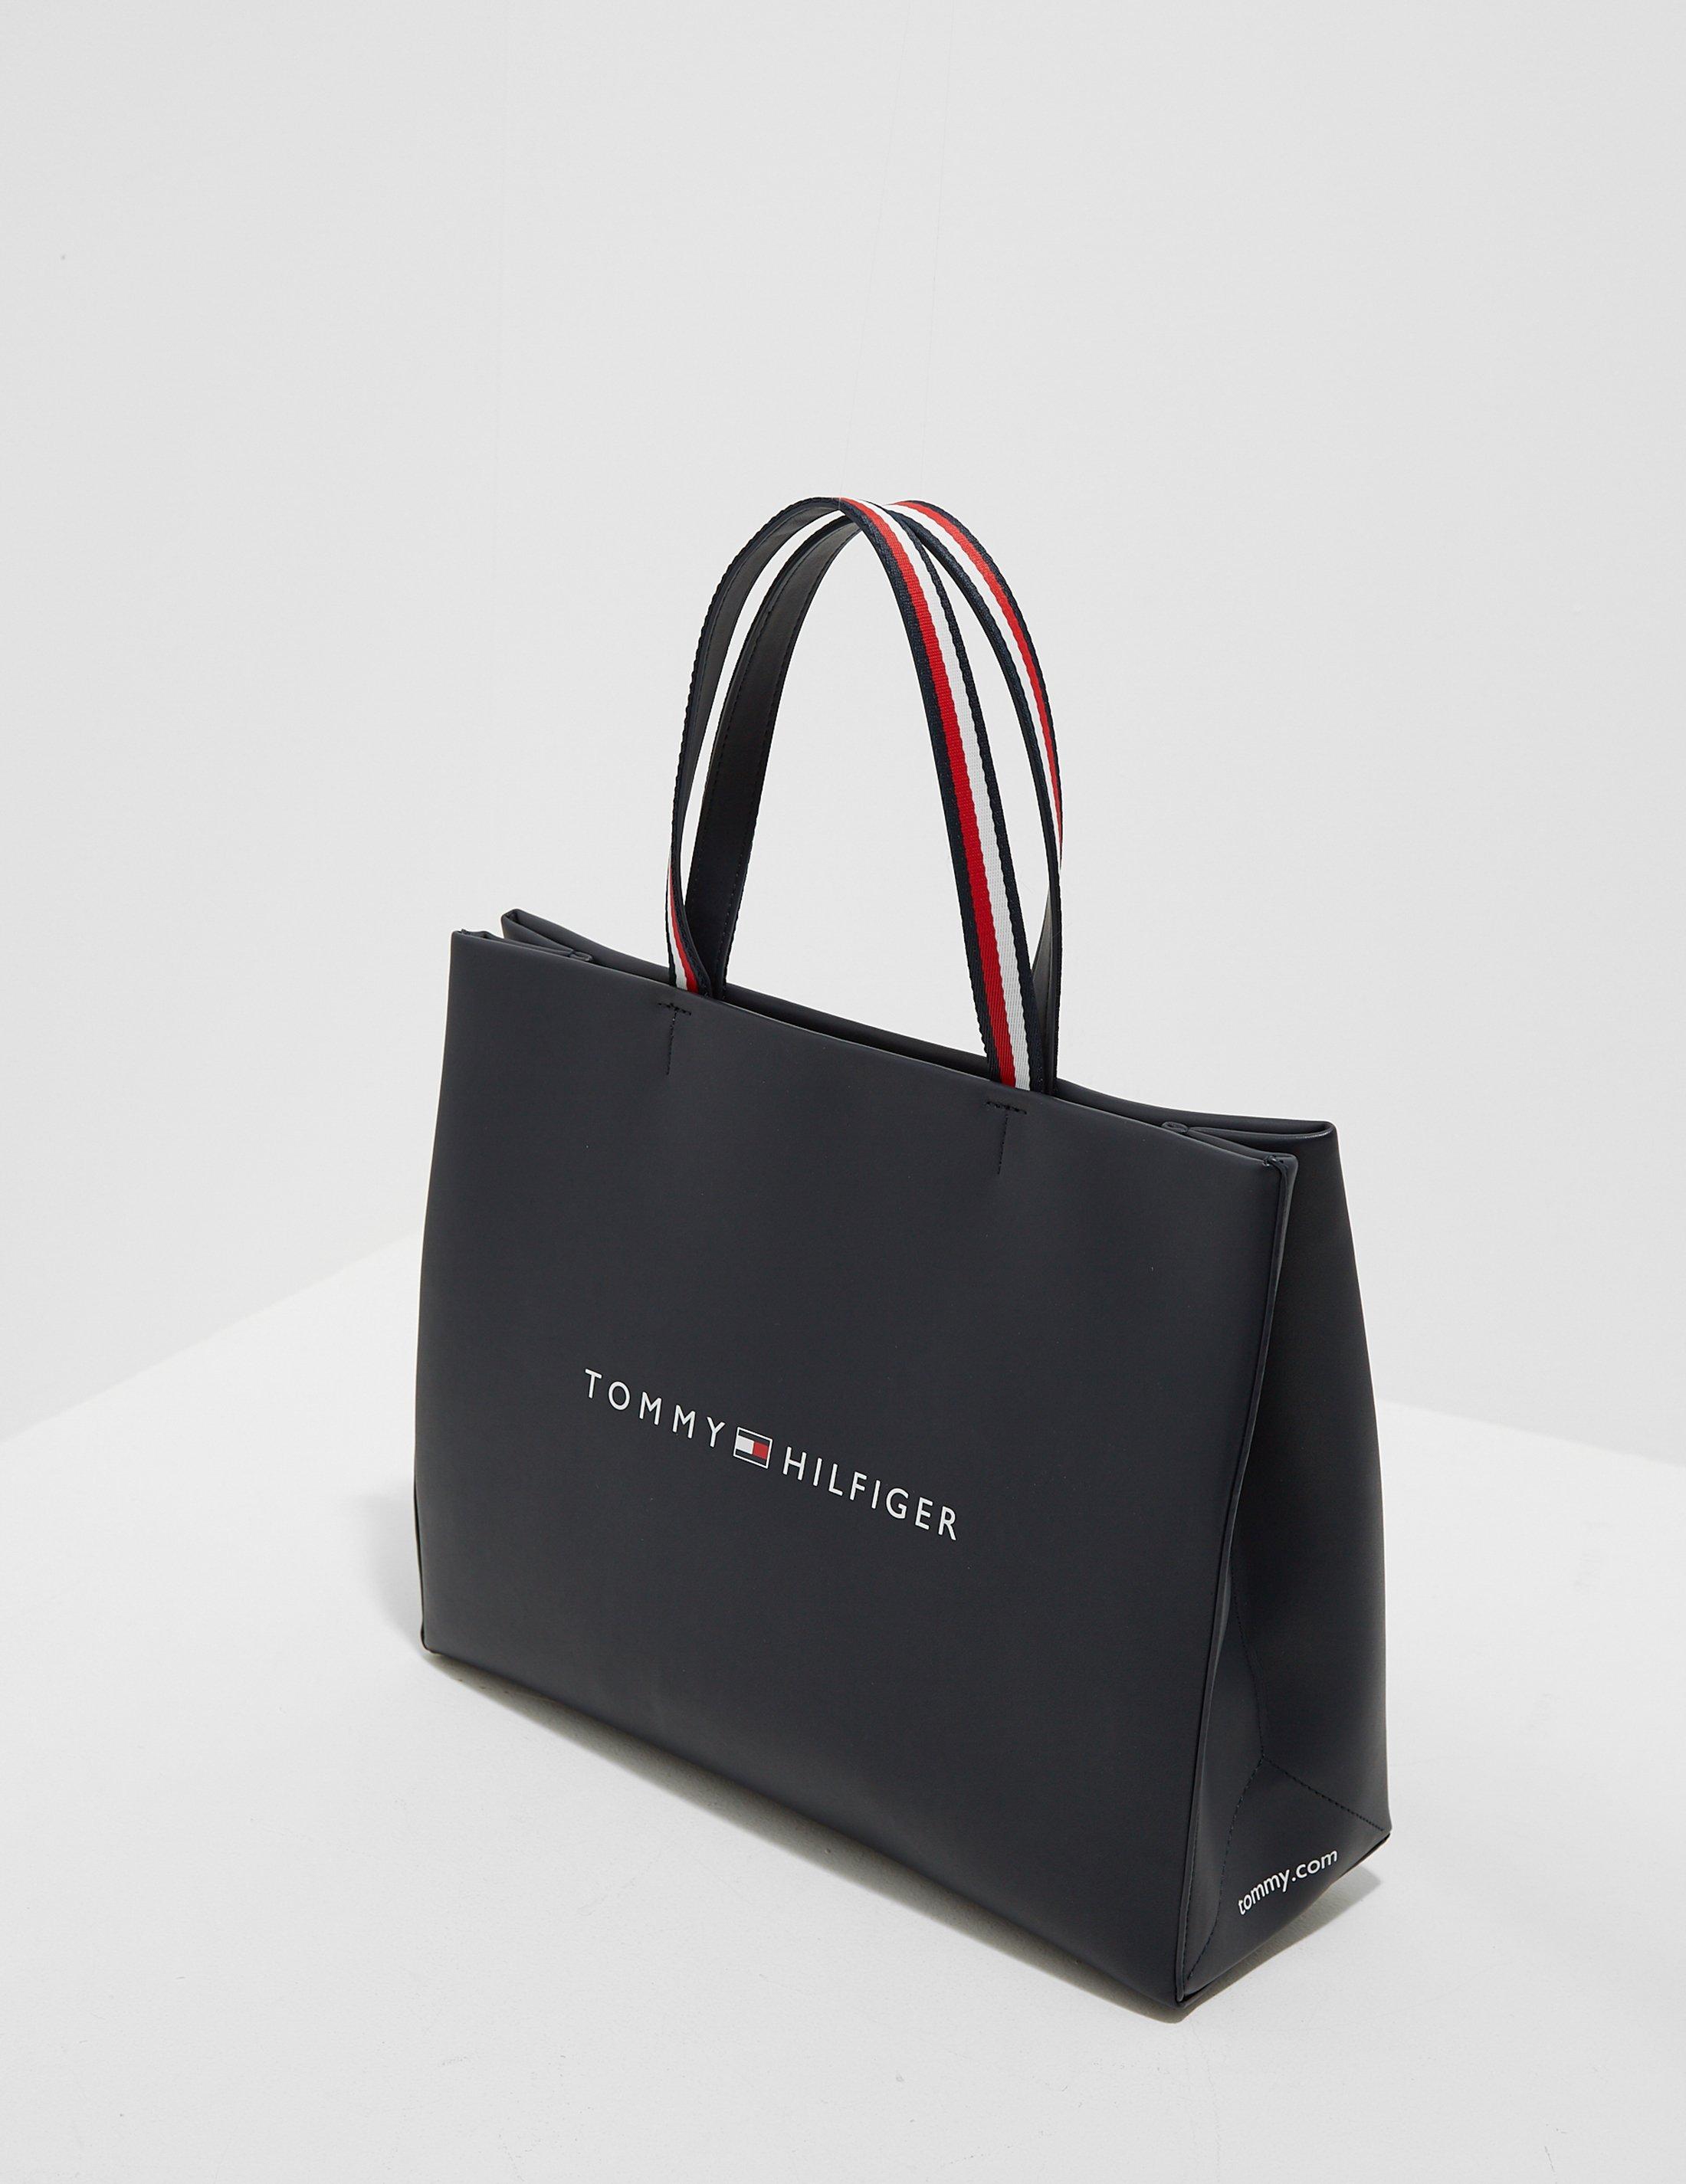 Tommy Hilfiger Shopping Tote Bag | vlr.eng.br